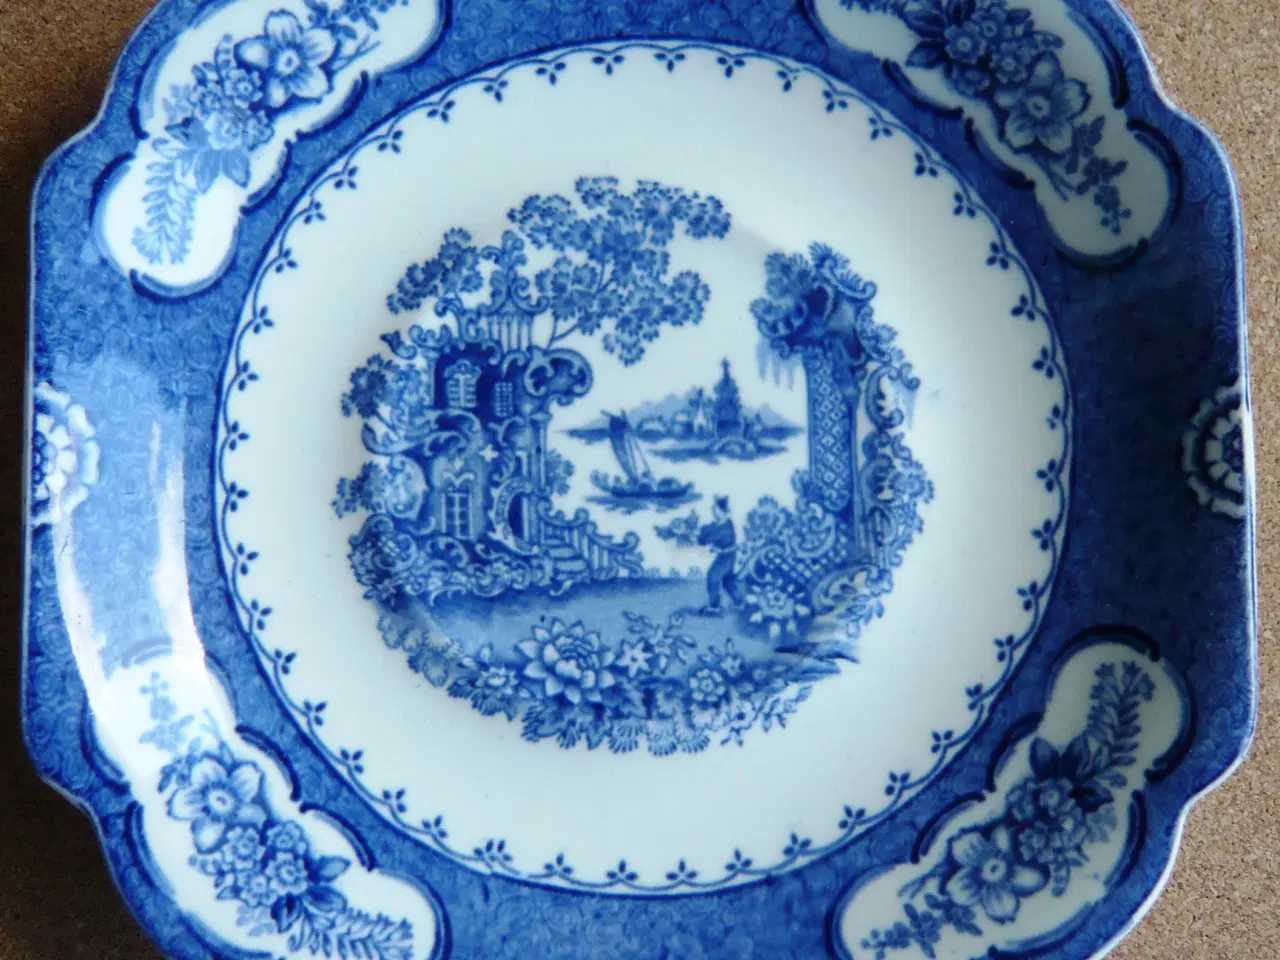 Billede 13 - Engelsk porcelæn/fajance i blå